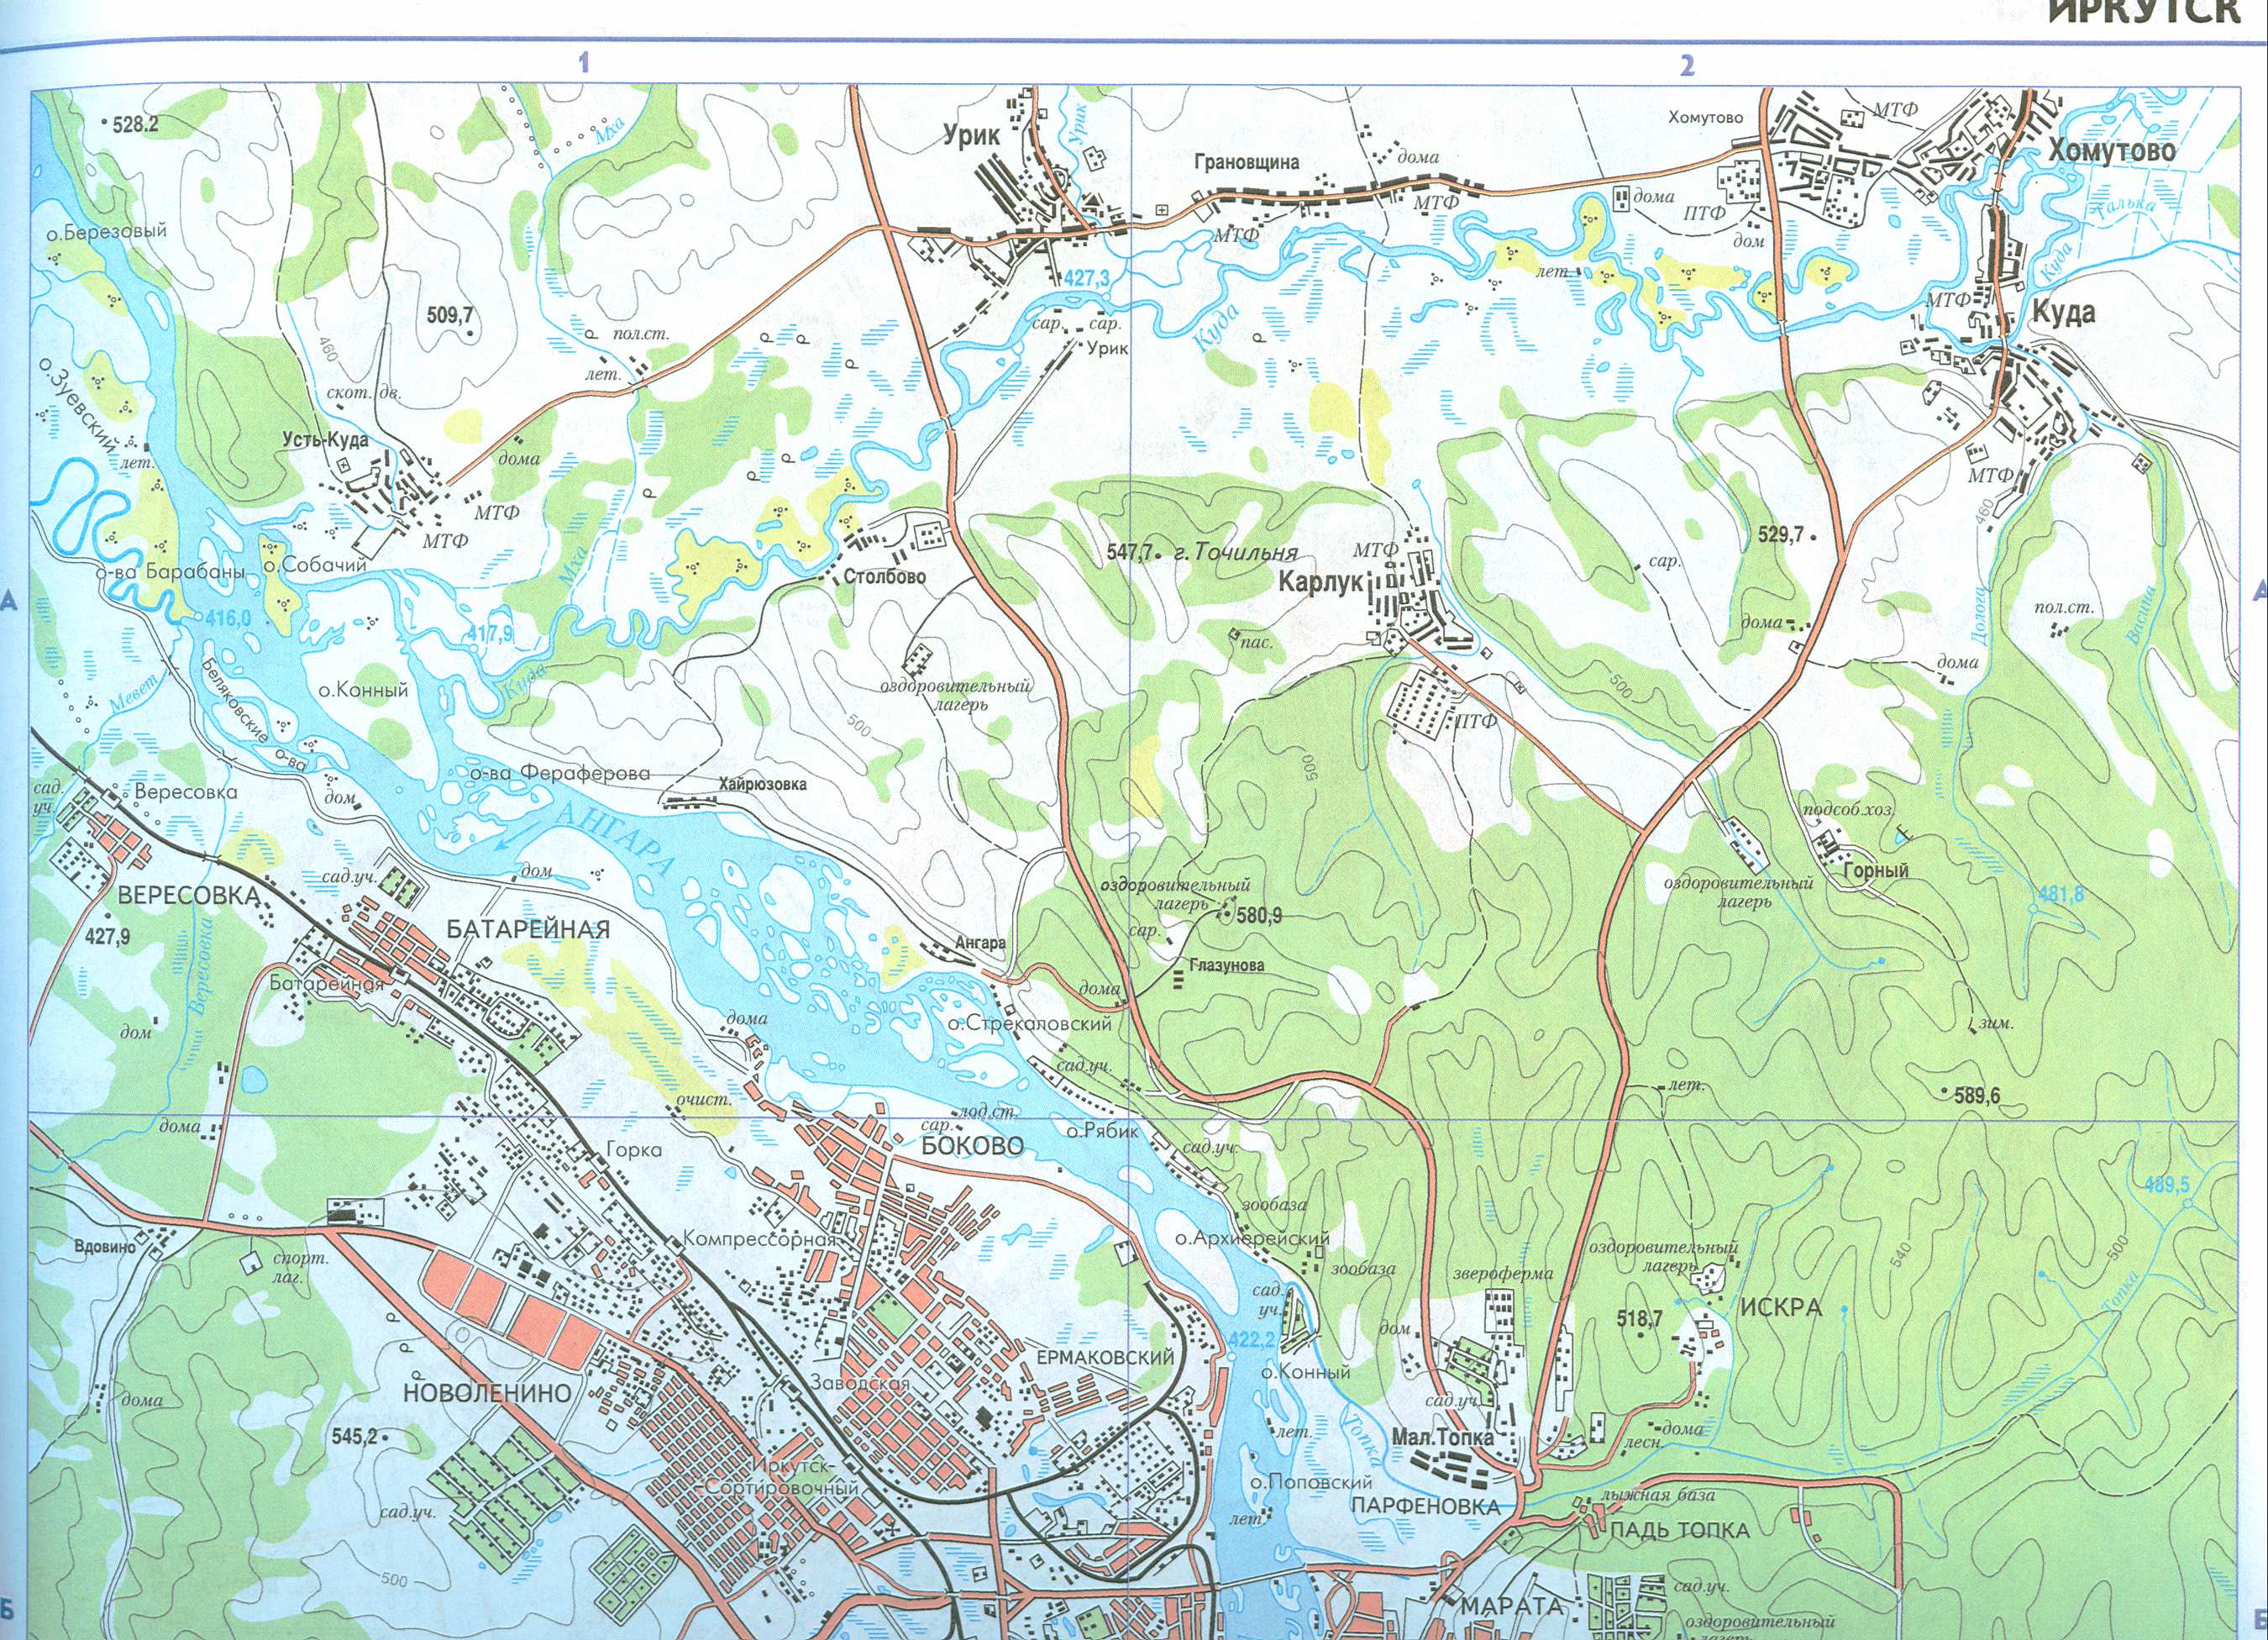 Карта Иркутска и окрестностей. Подробная карта автомобильных дорог города Иркутск с пригородами, A0 - 